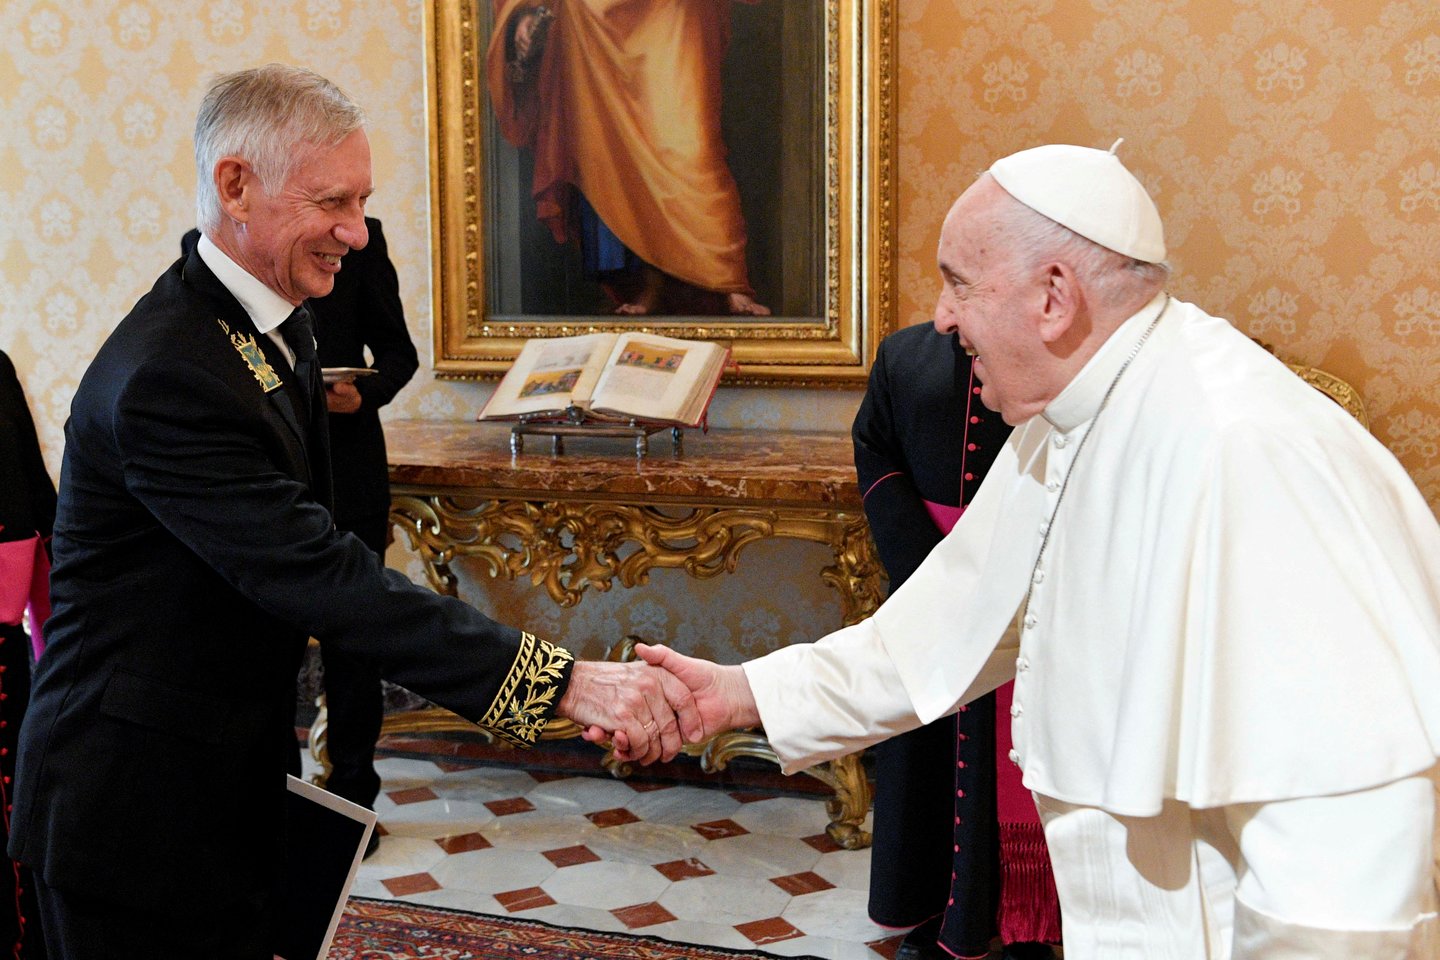  Popiežius Pranciškus susitiko su naujuoju Rusijos ambasadoriumi.<br> REUTERS/Scanpix nuotr.